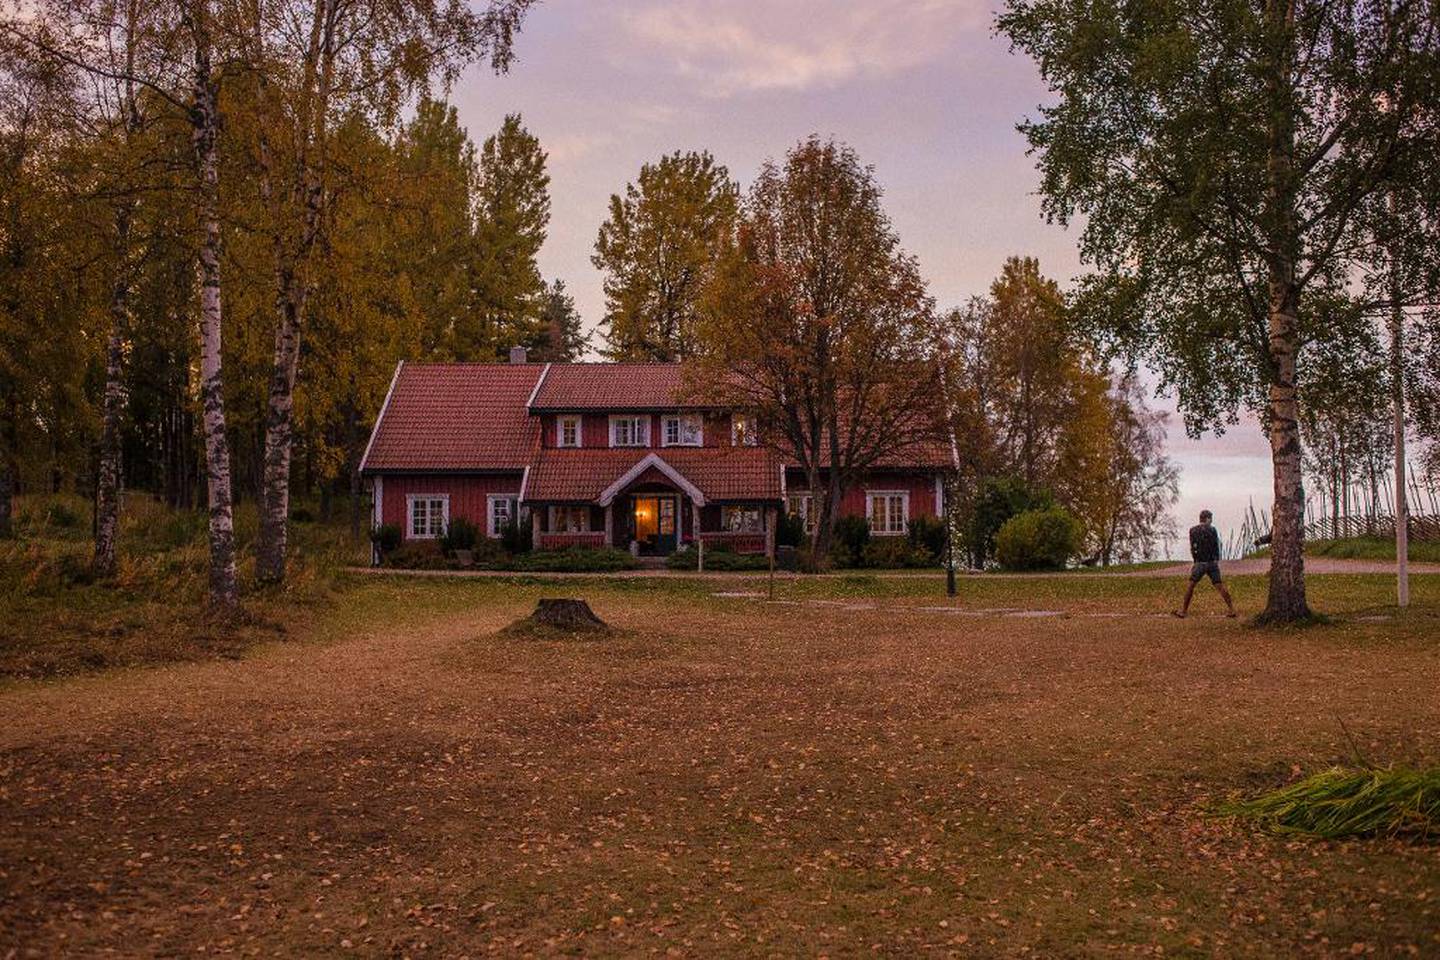 Opaker Gård ligger idyllisk til langt inn i skogen på Hedmarken. Her pleier det vanligvis å samle seg businessfolk for konferanser. Nå er stemningen på stedet annerledes, fylt med lek og moro.